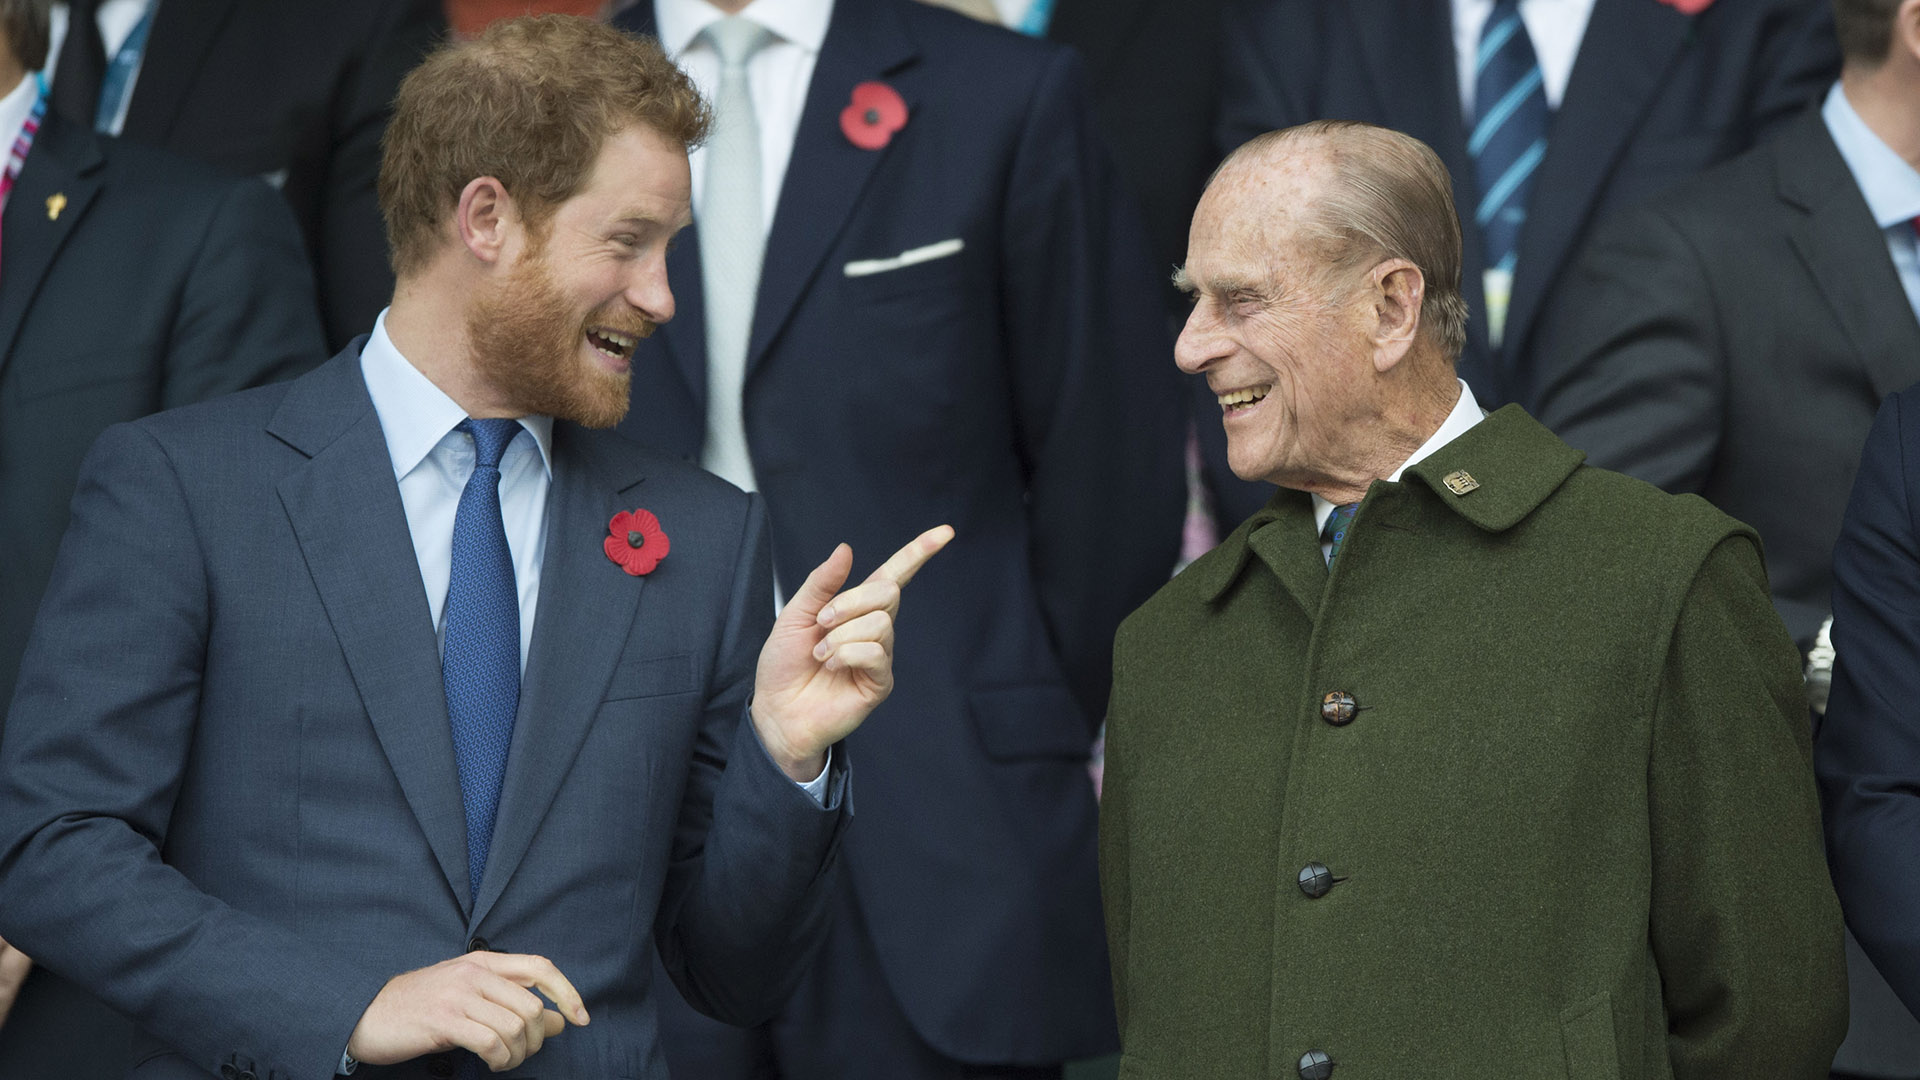 La introducción cuenta el diálogo entre Harry, William y Charles tras el entierro del príncipe Felipe, duque de Edimburgo. (Tim Rooke/Shutterstock)